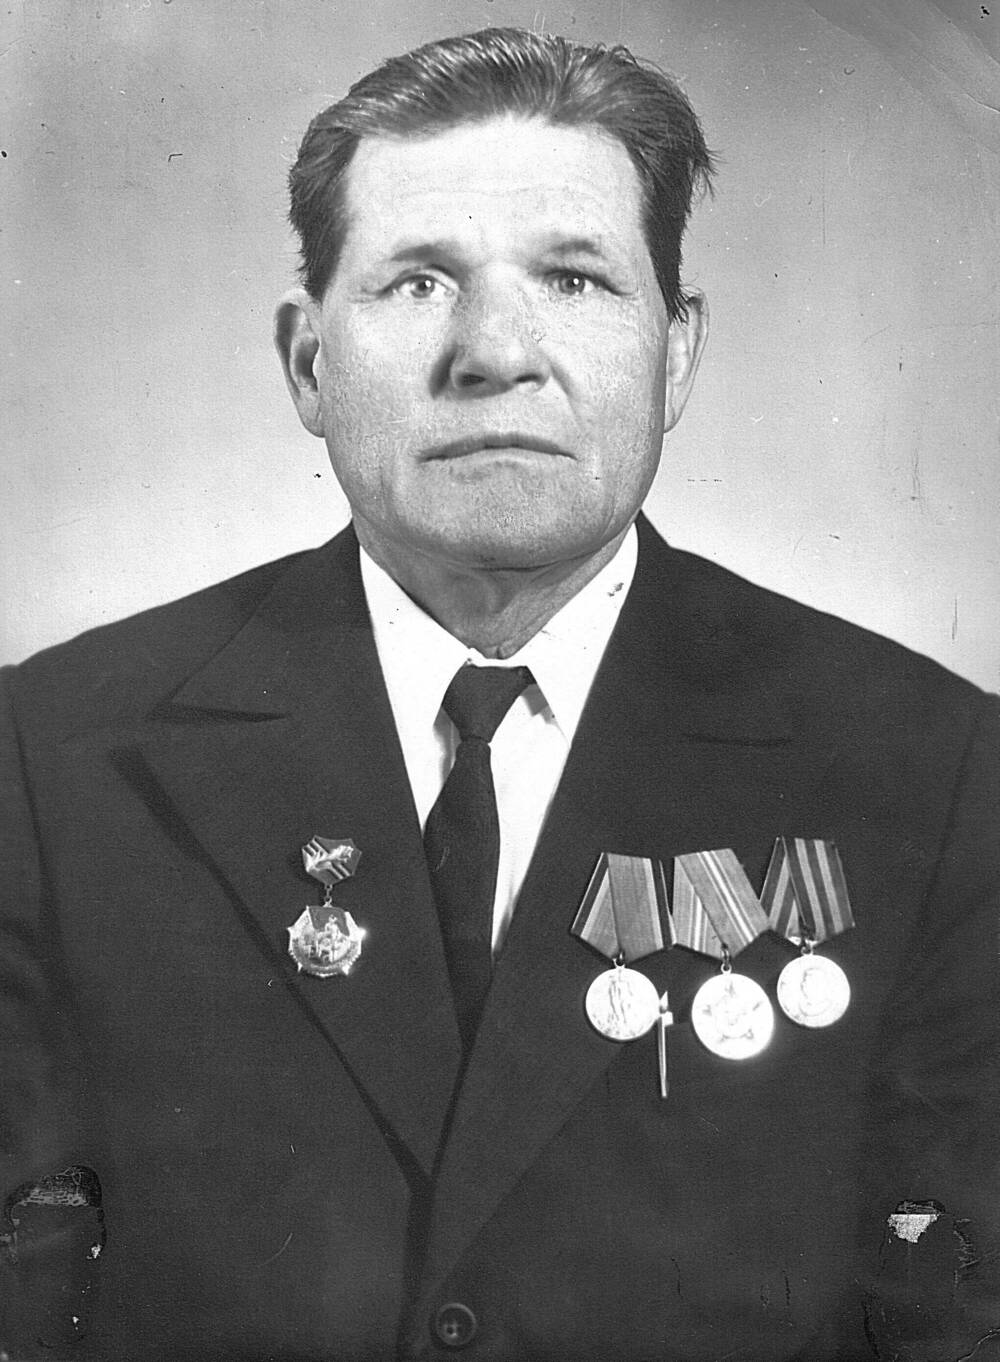 Фотография черно-белая Лунева Николая Григорьевича, ветерана Великой Отечественной войны 1941-1945 г. г.